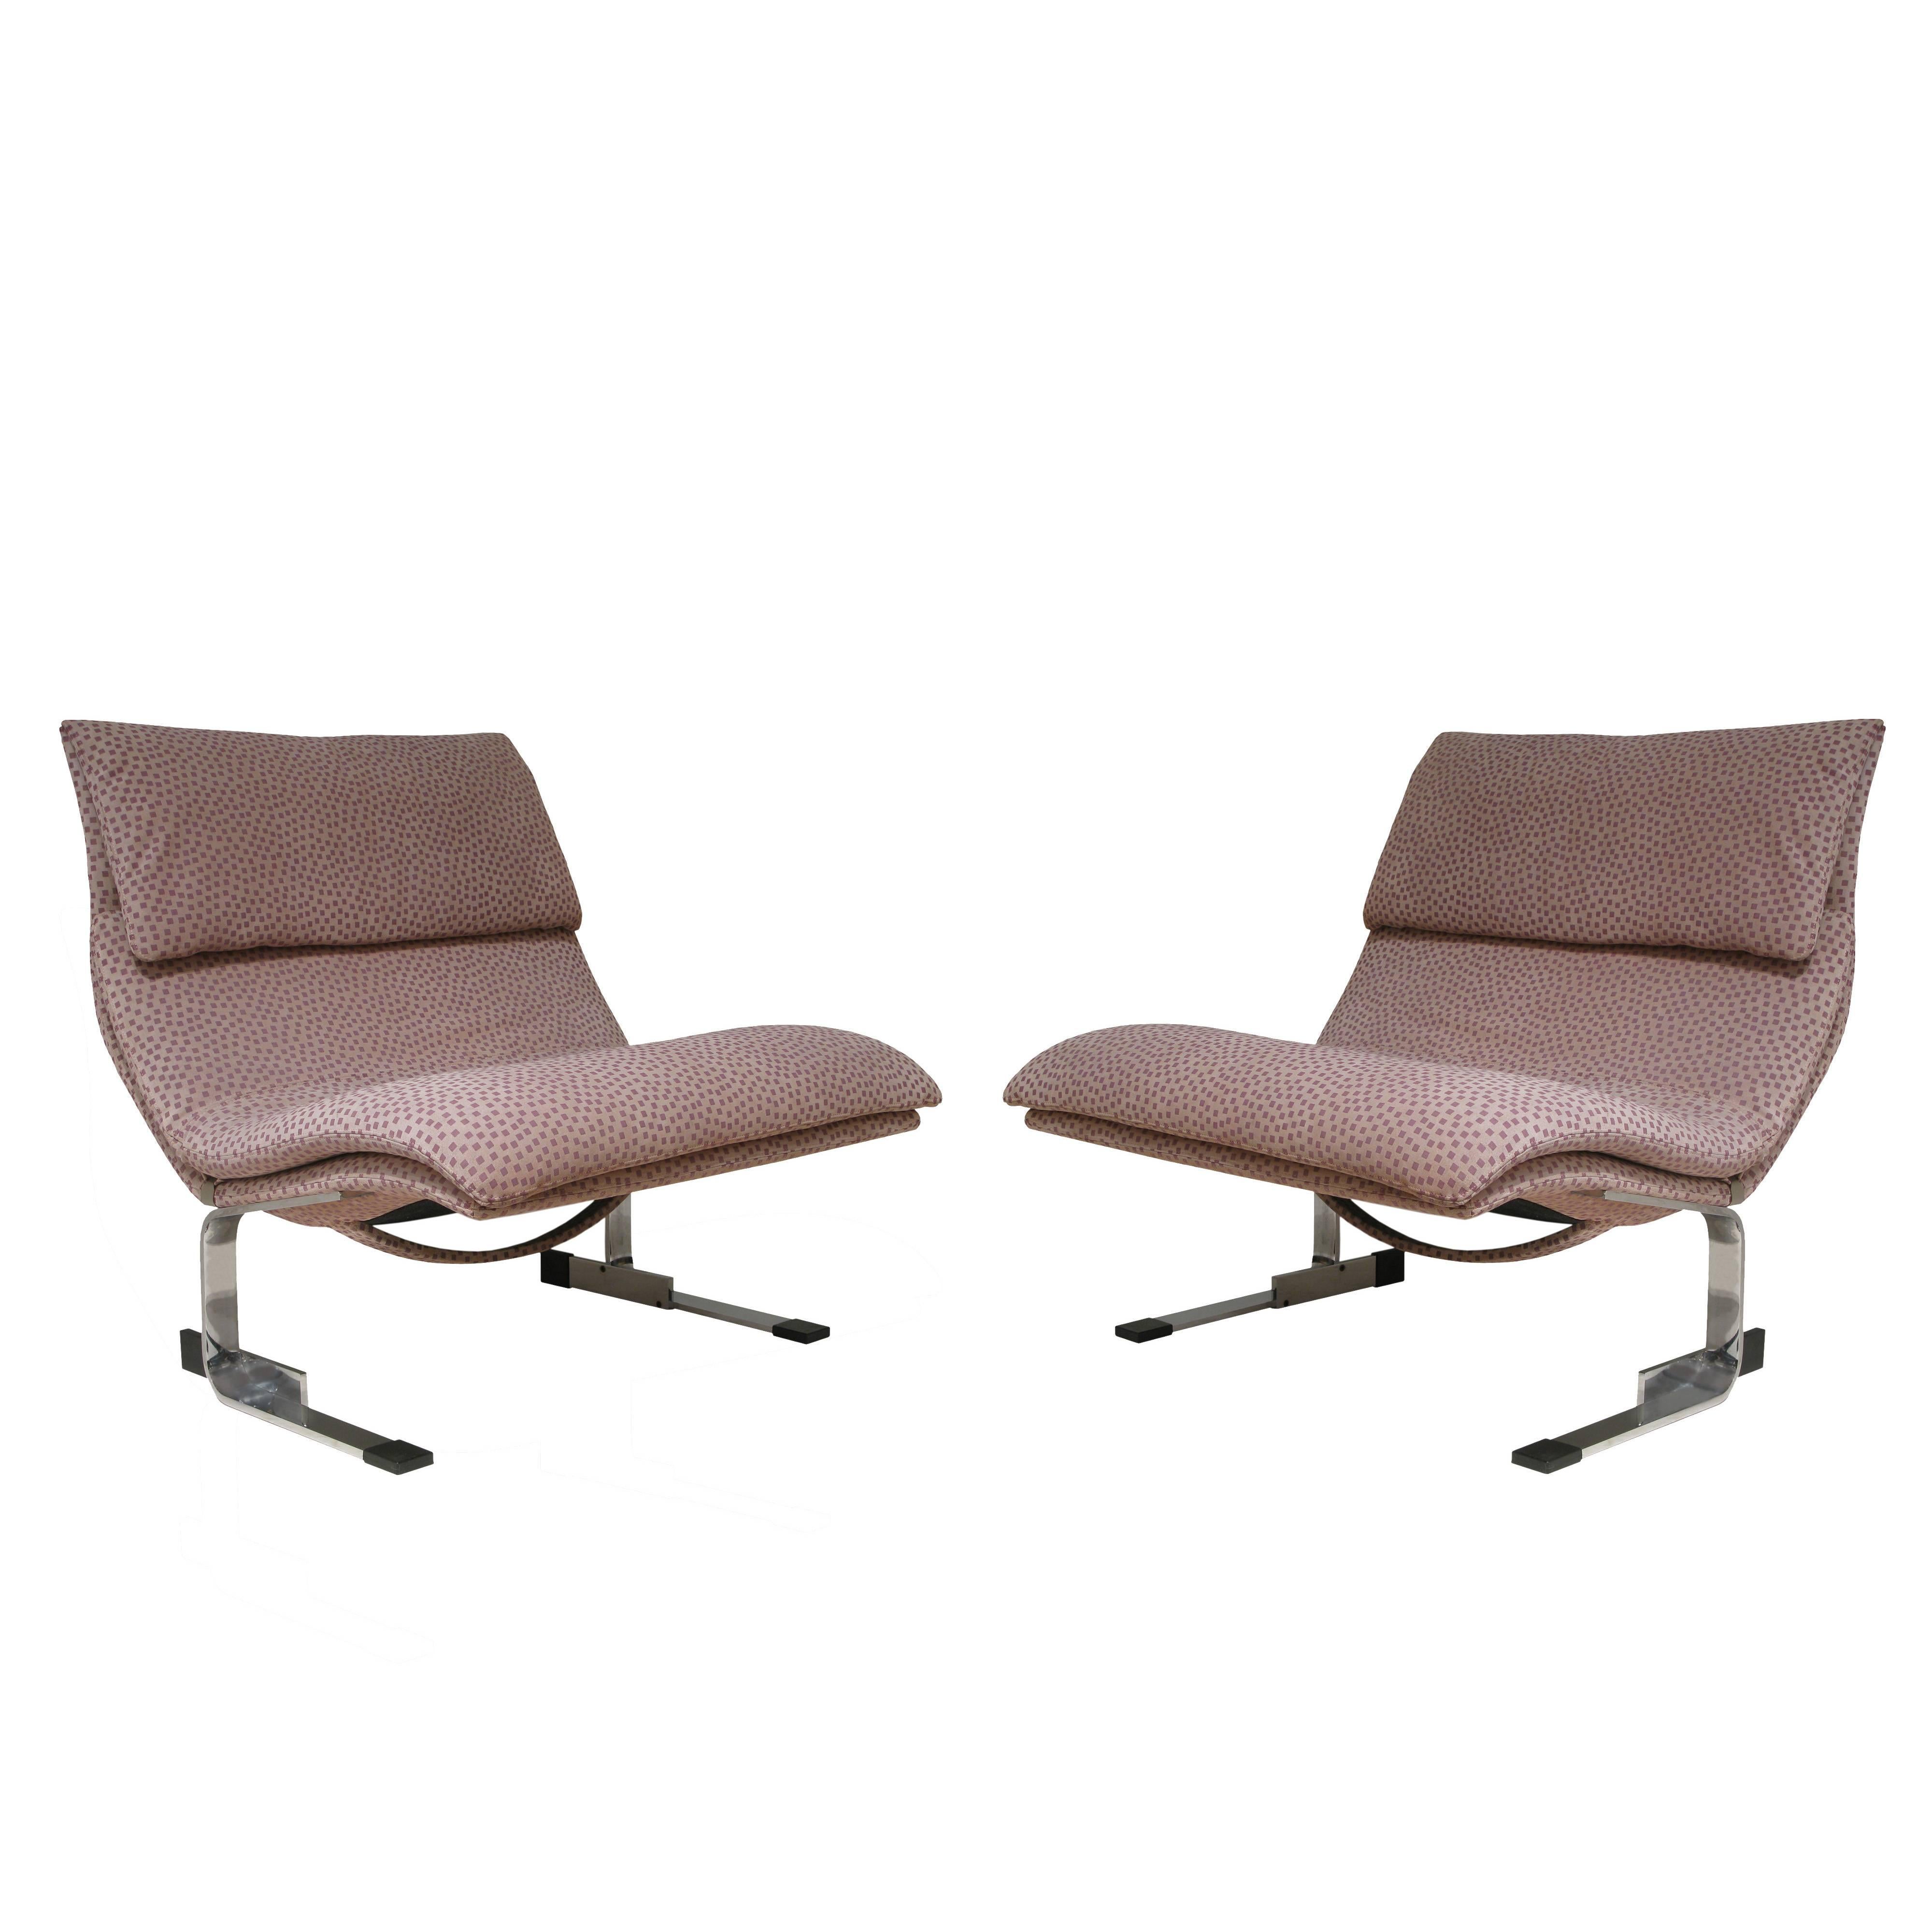 Saporiti Pair of Onda "Wave" Chairs, 1970s